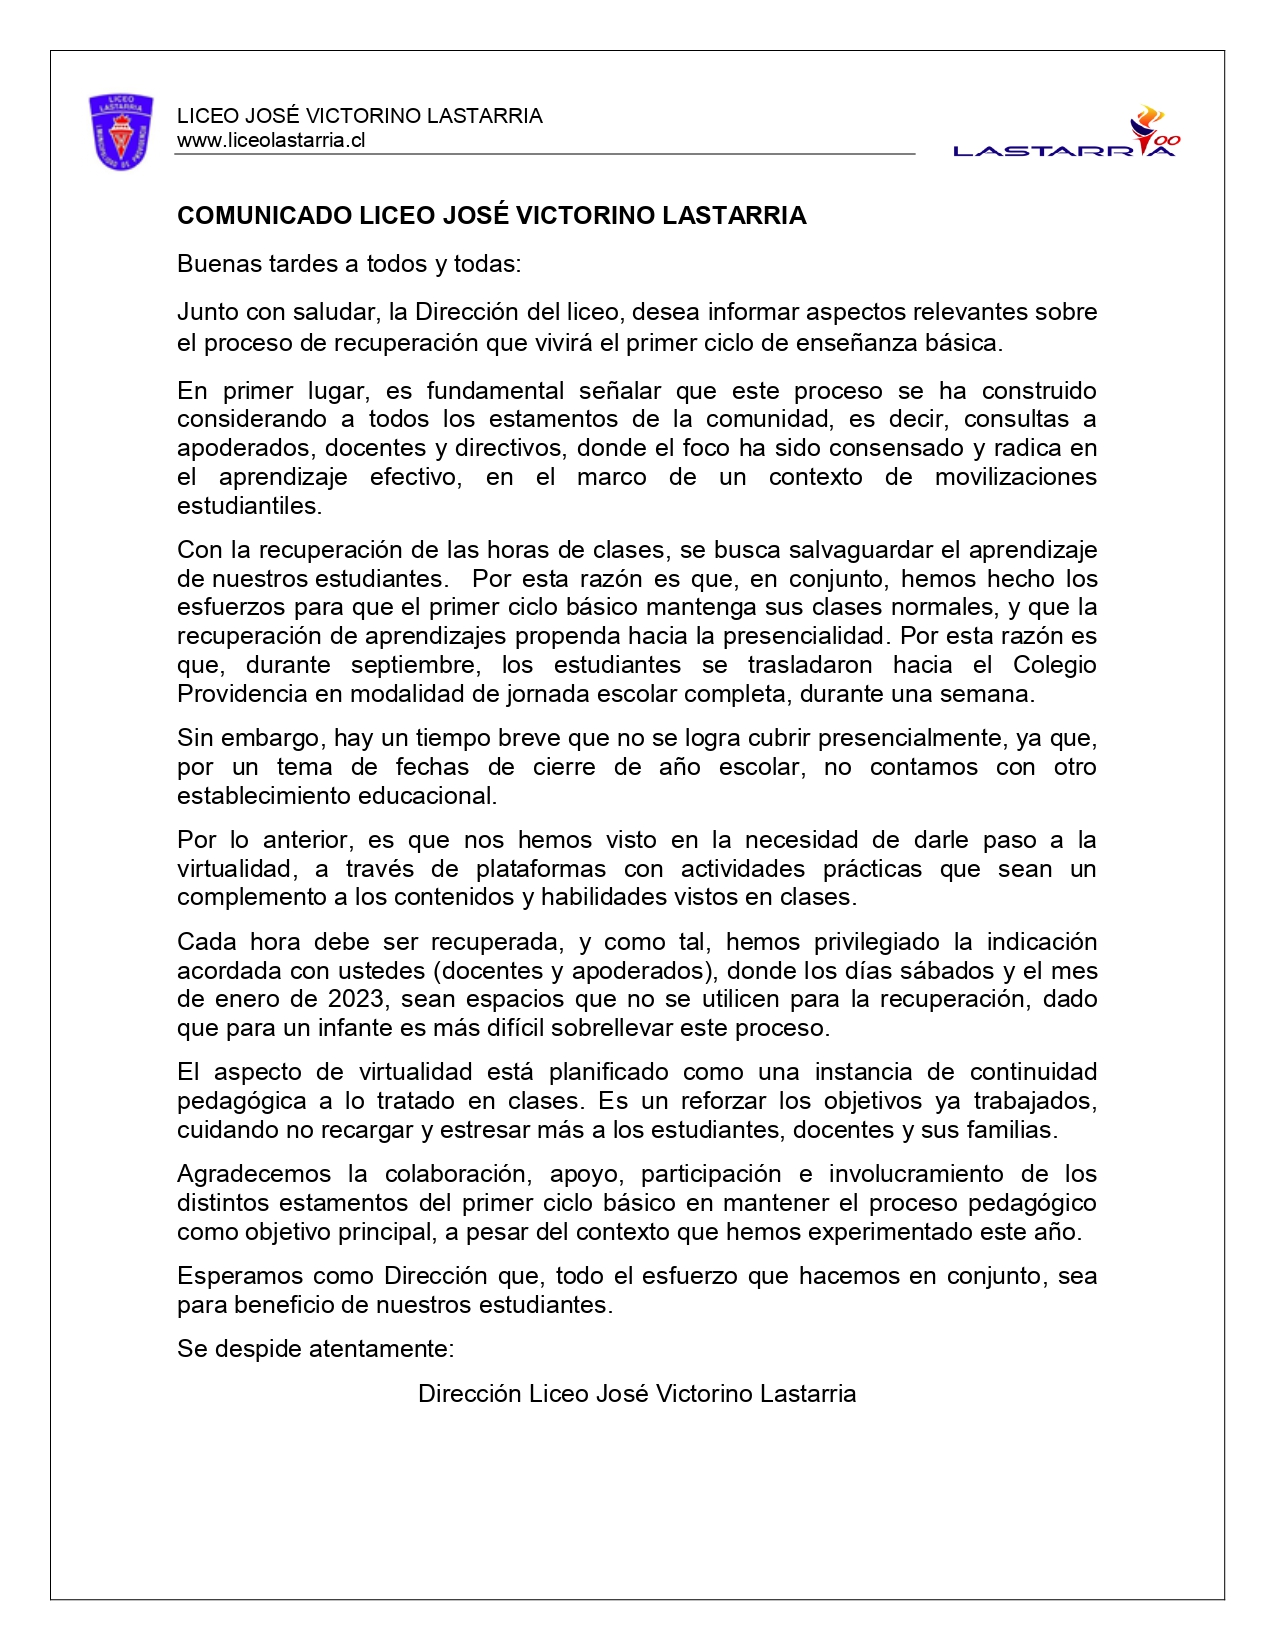 COMUNICADO RECUPERACION PRIMER CICLO BASICO JVL page 0001